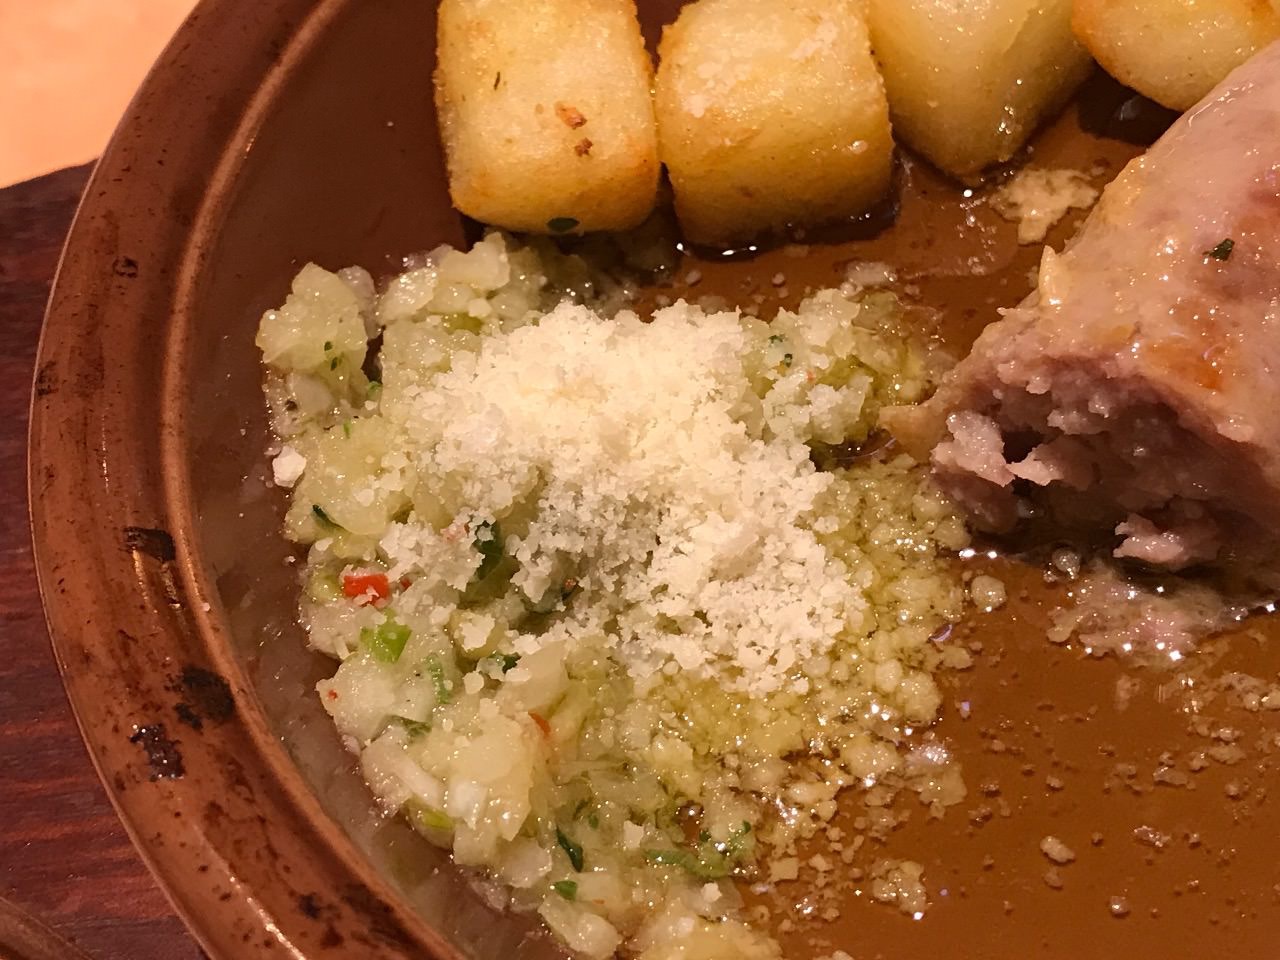 【サイゼリヤ】「野菜ソースのグリルソーセージ」より美味しく食べる方法